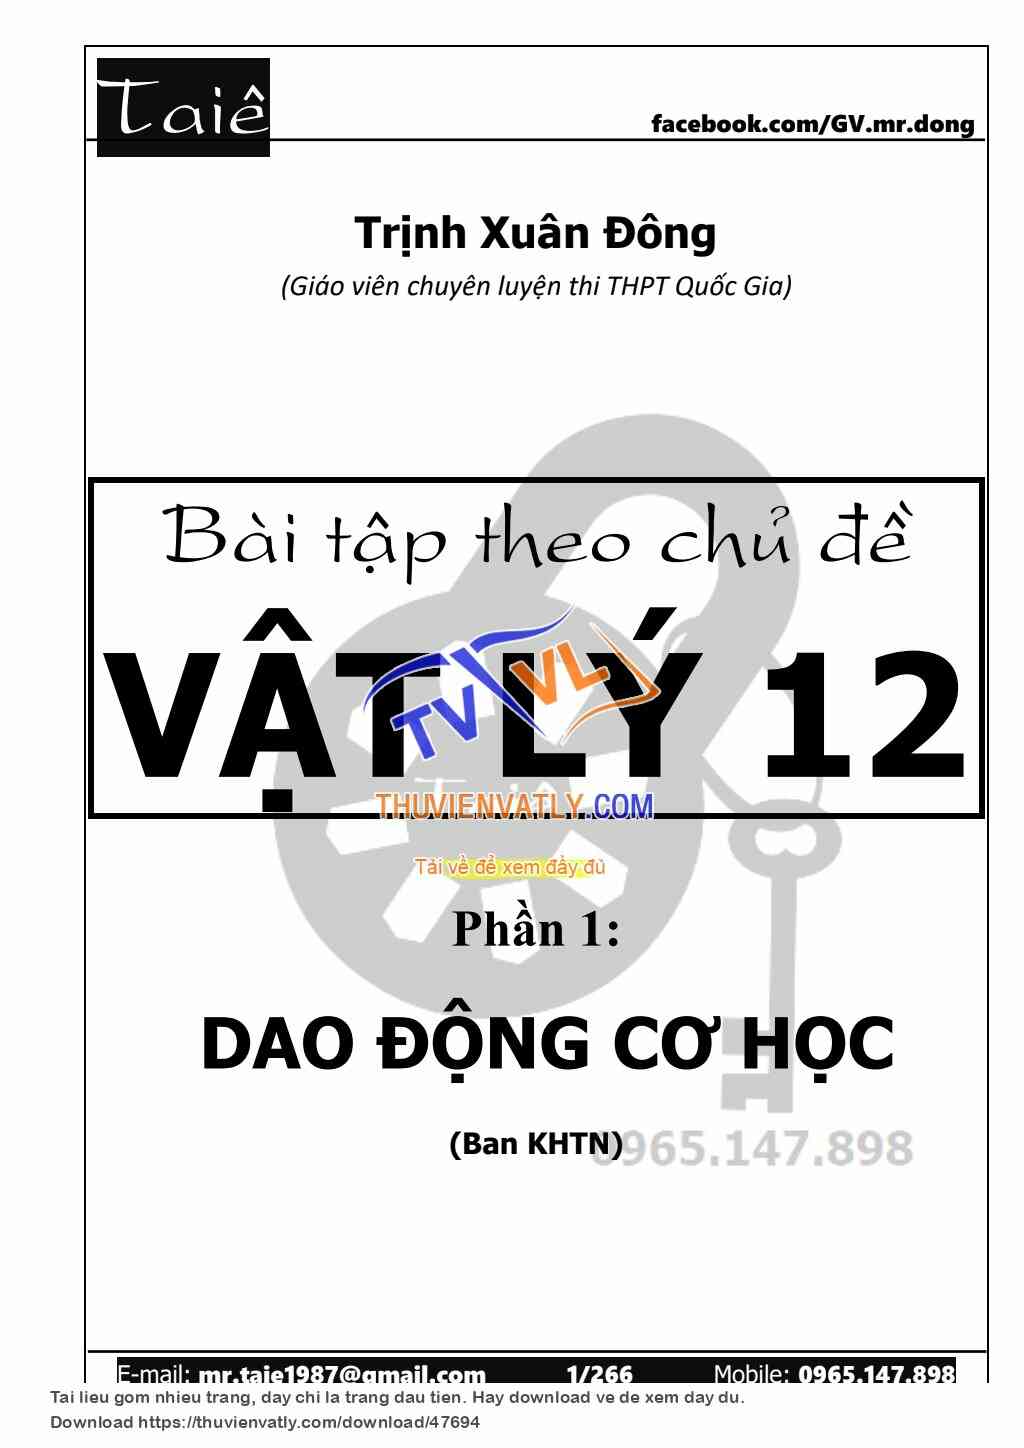 Dao động cơ CHUYÊN - GV Trịnh Xuân Đông